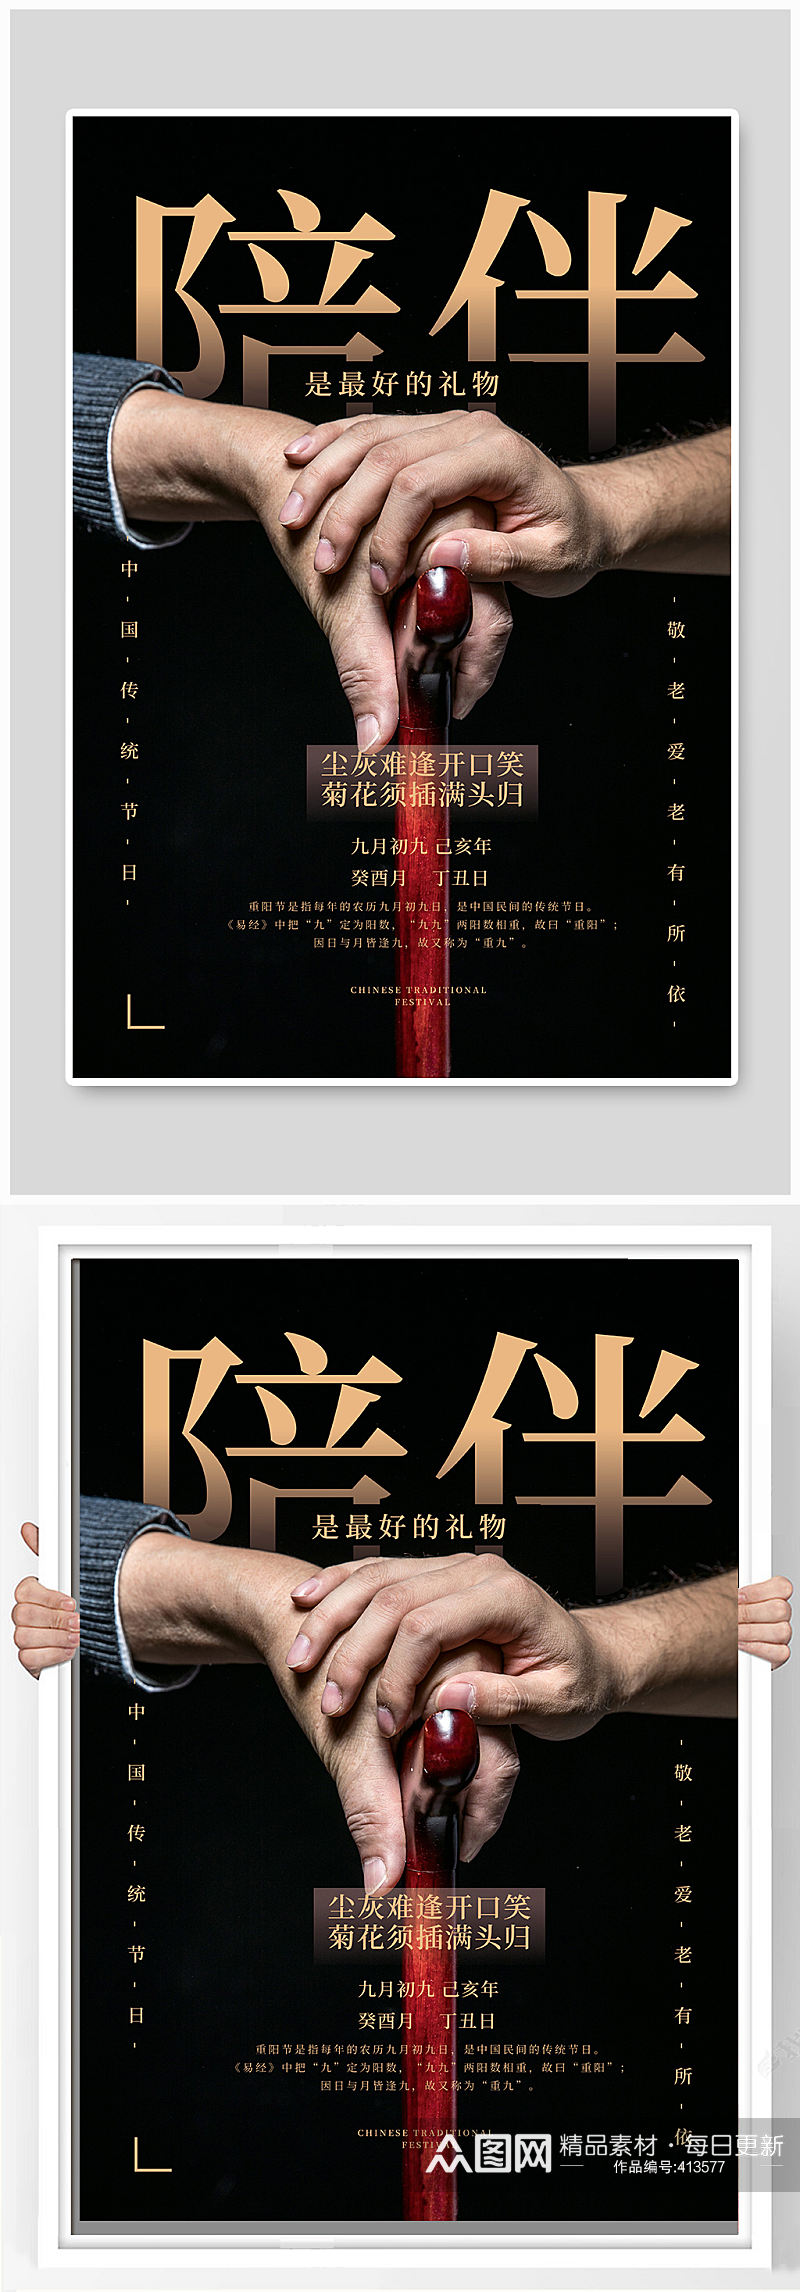 中国传统节日九月九重阳节海报素材